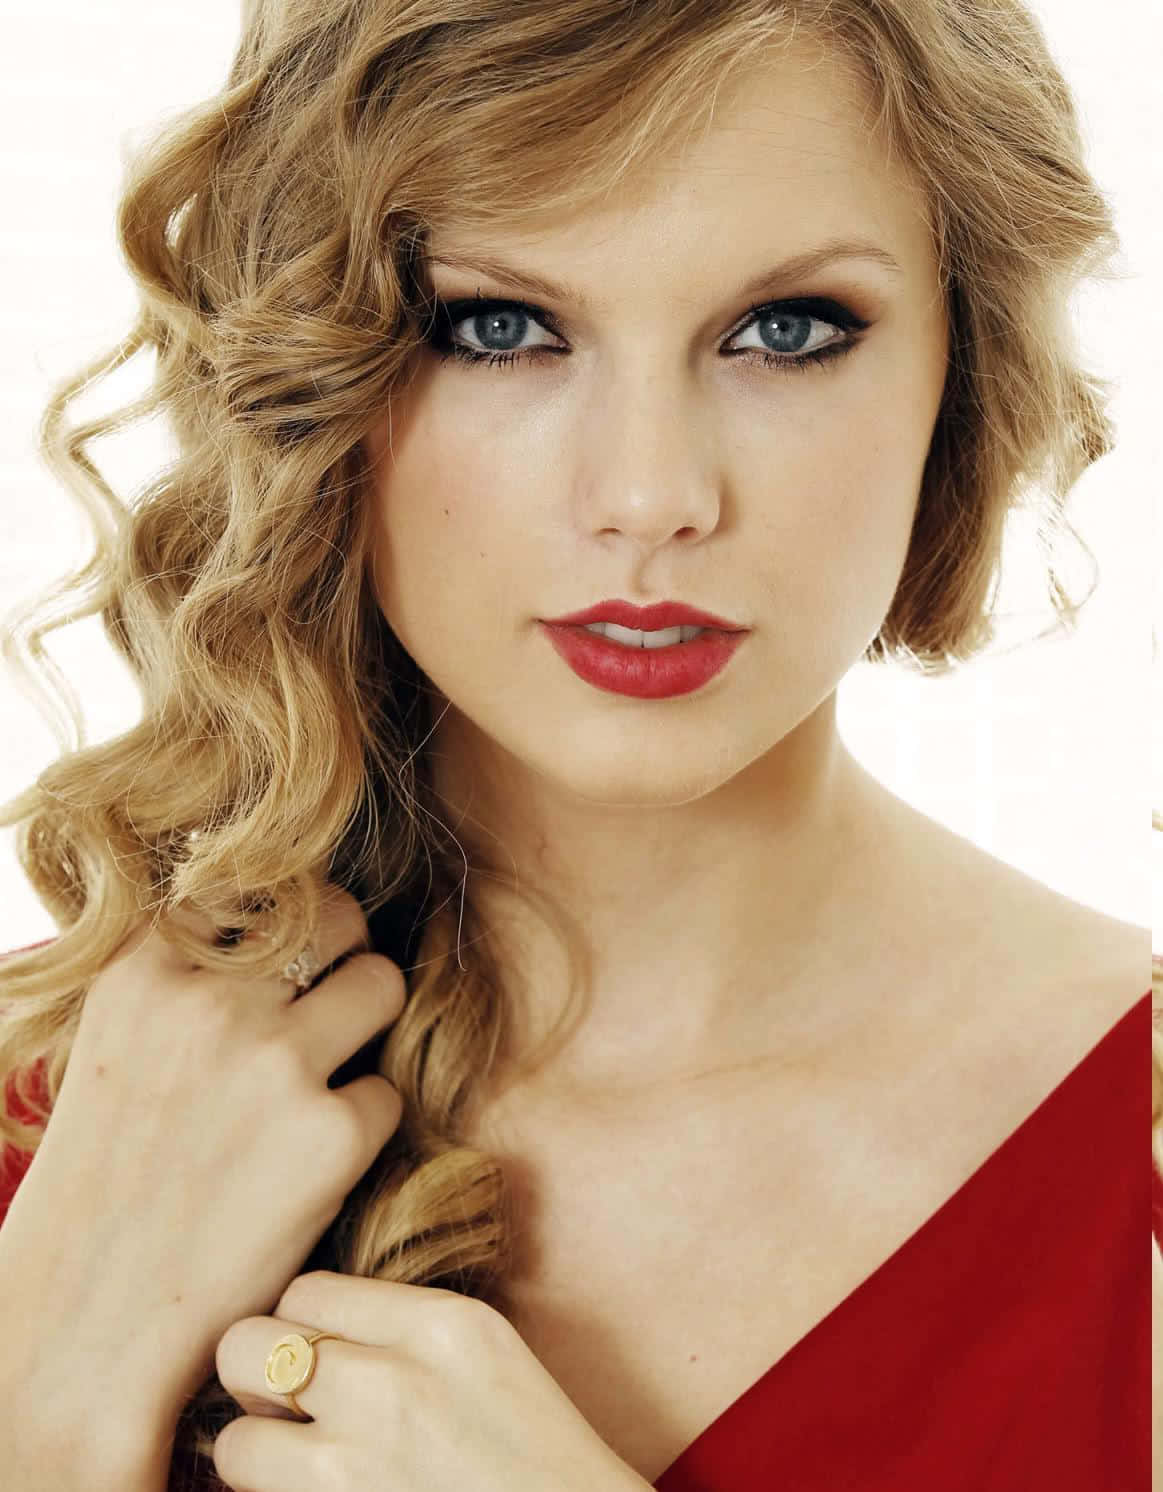 Taylor Swift looks beautiful in her blue dress